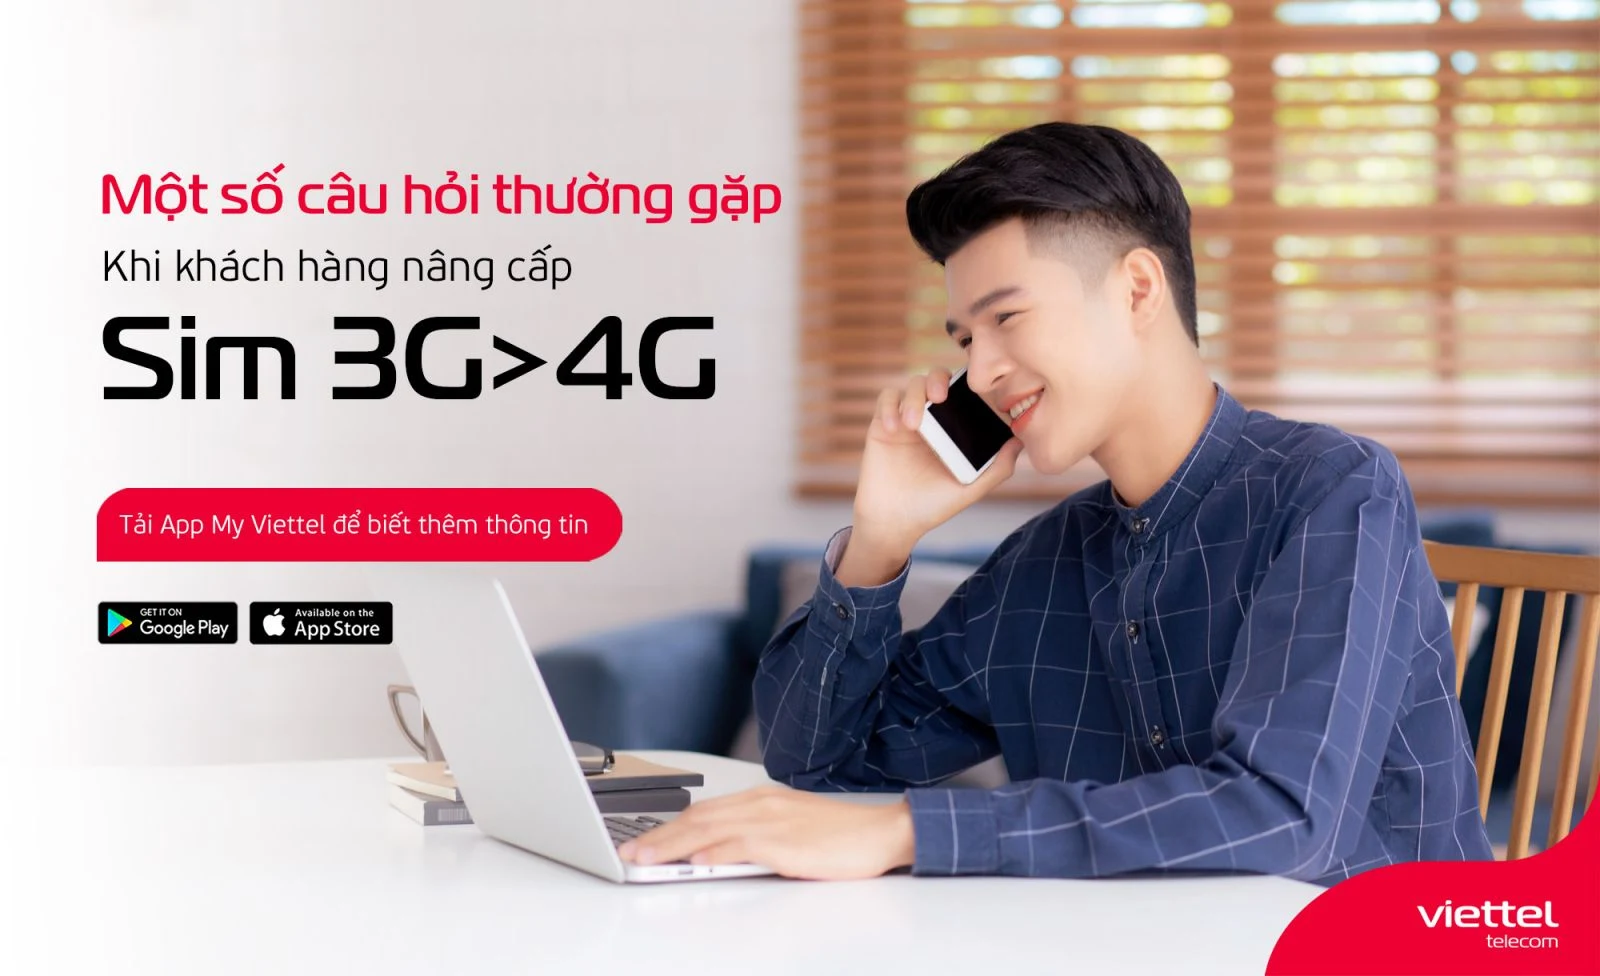 Nâng cấp từ sim 3G lên 4G của Viettel như thế nào ?